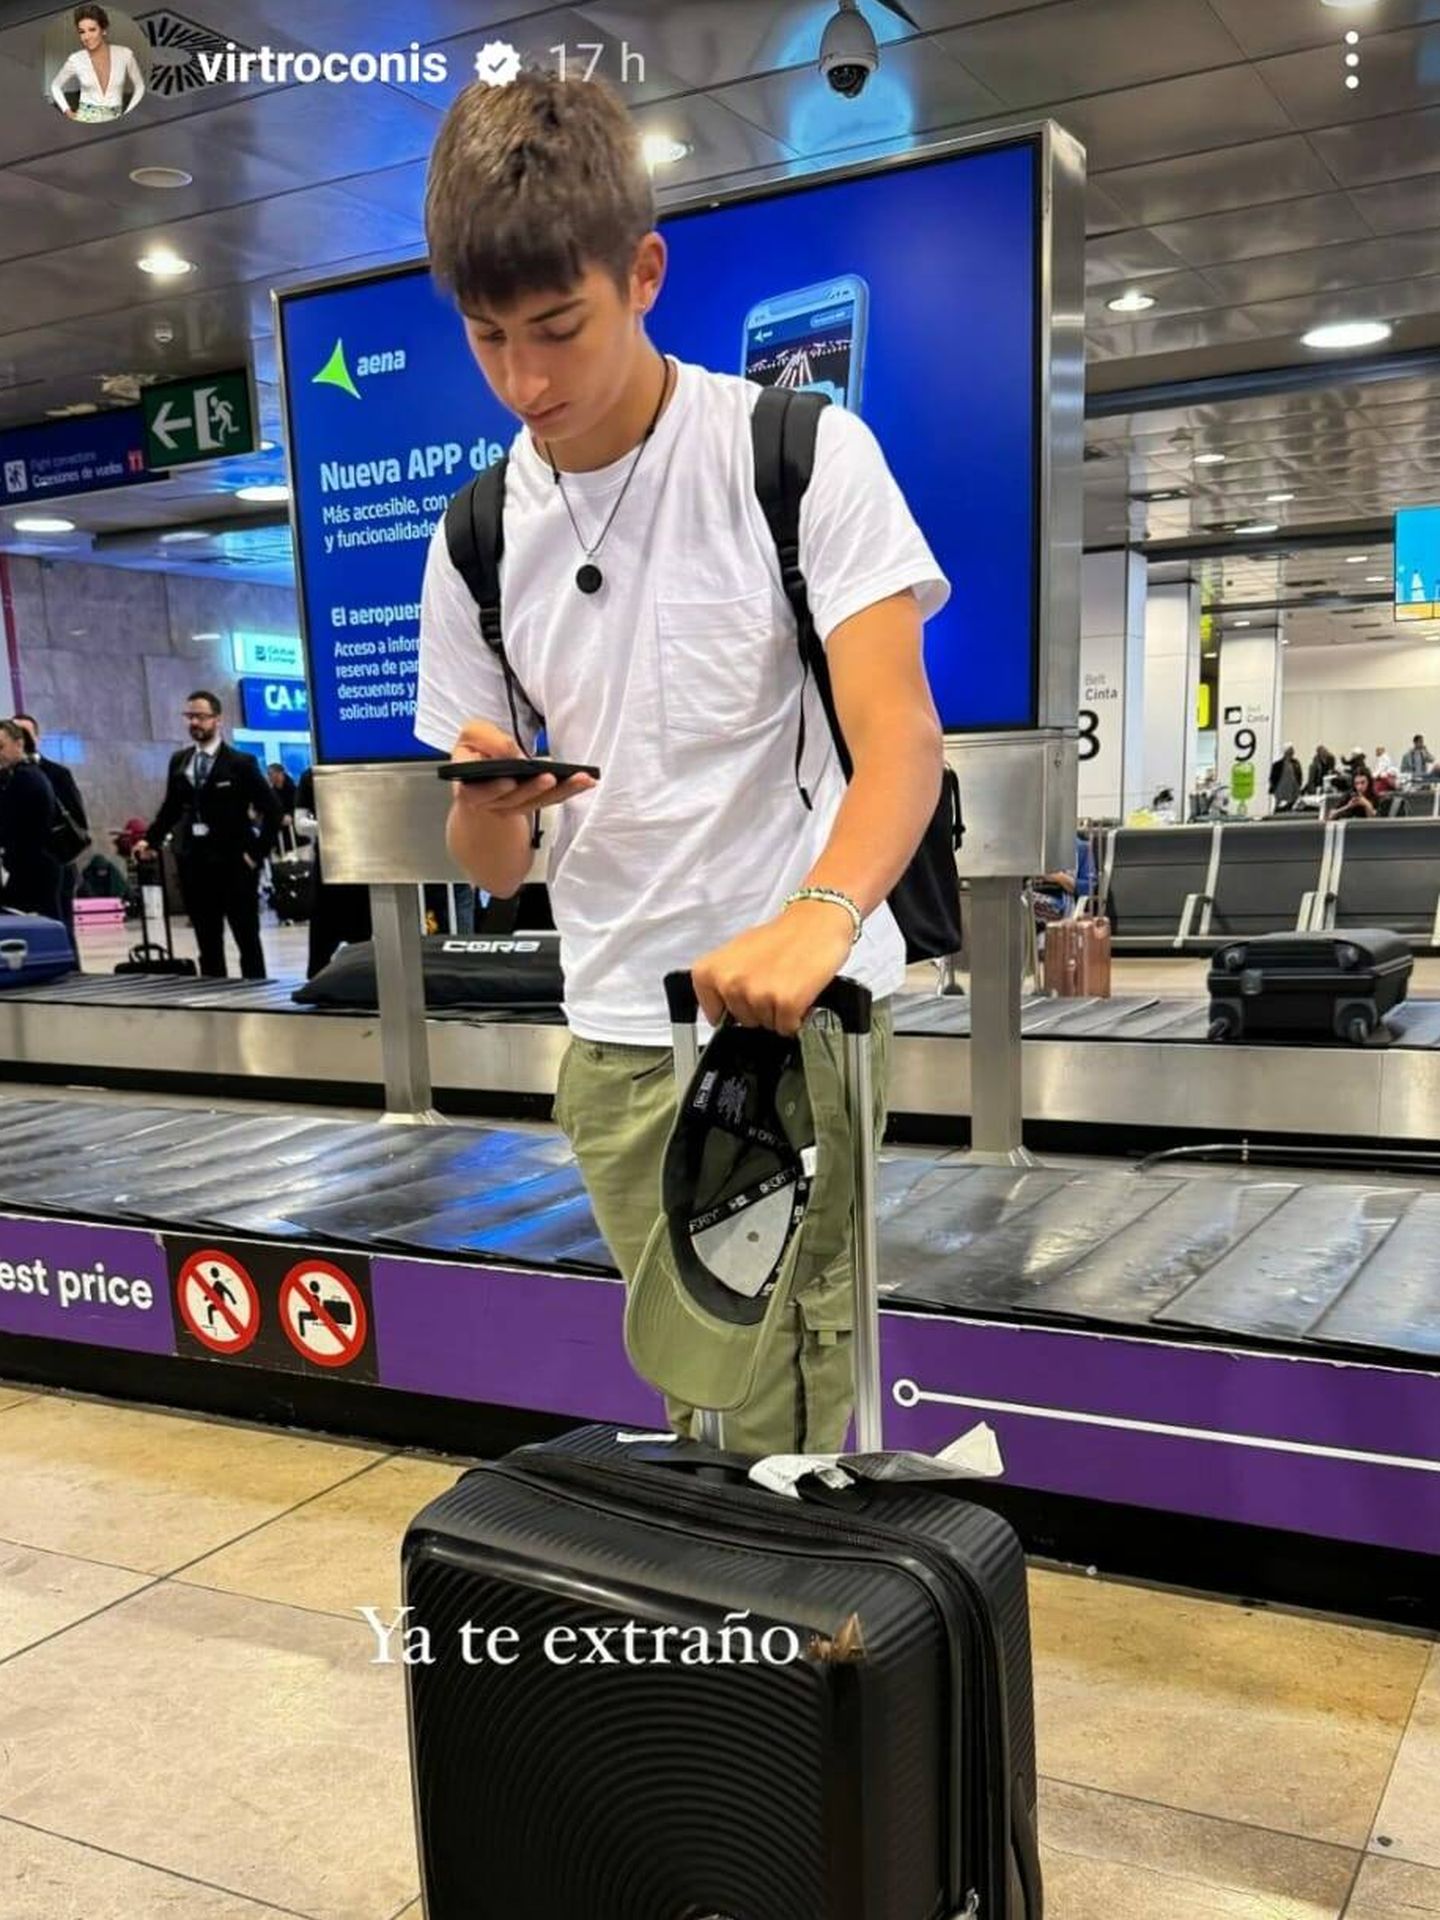 Manuel, hijo de Virginia, a su llegada a Madrid. (Instagram/@virtroconis)